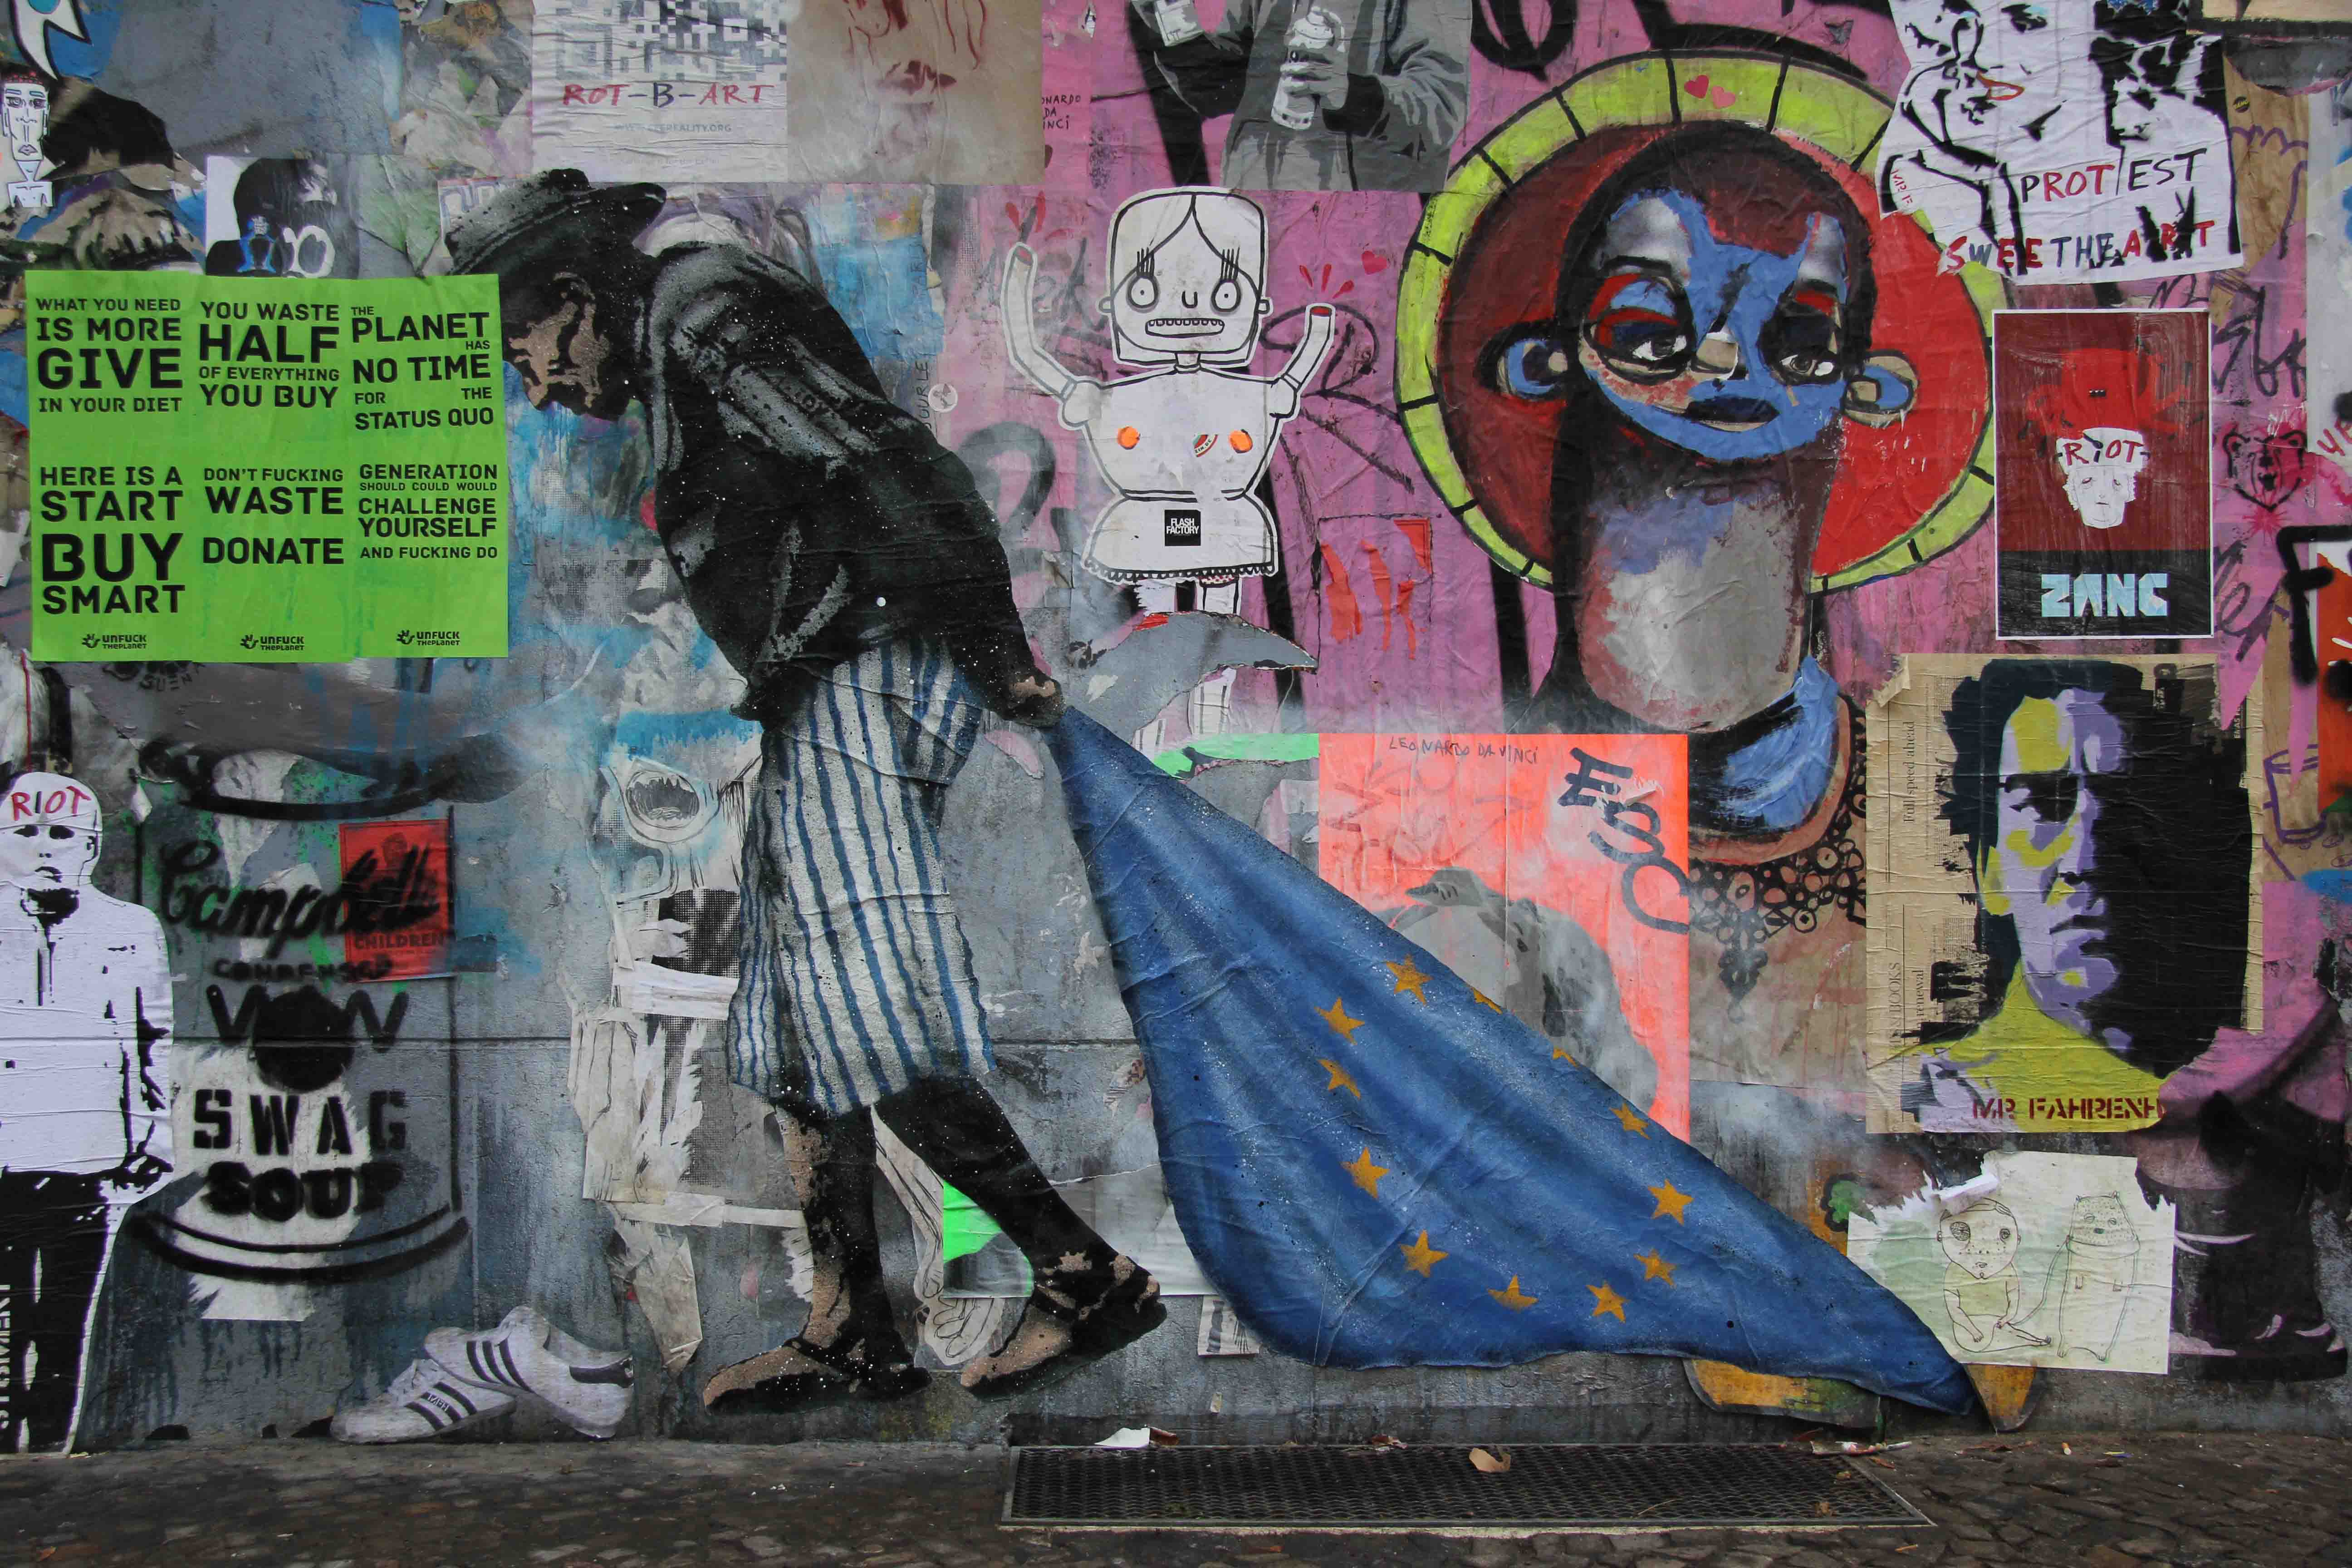 Fuck Politician - Street Art by L.E.T. (Les Enfants Terribles) in Berlin